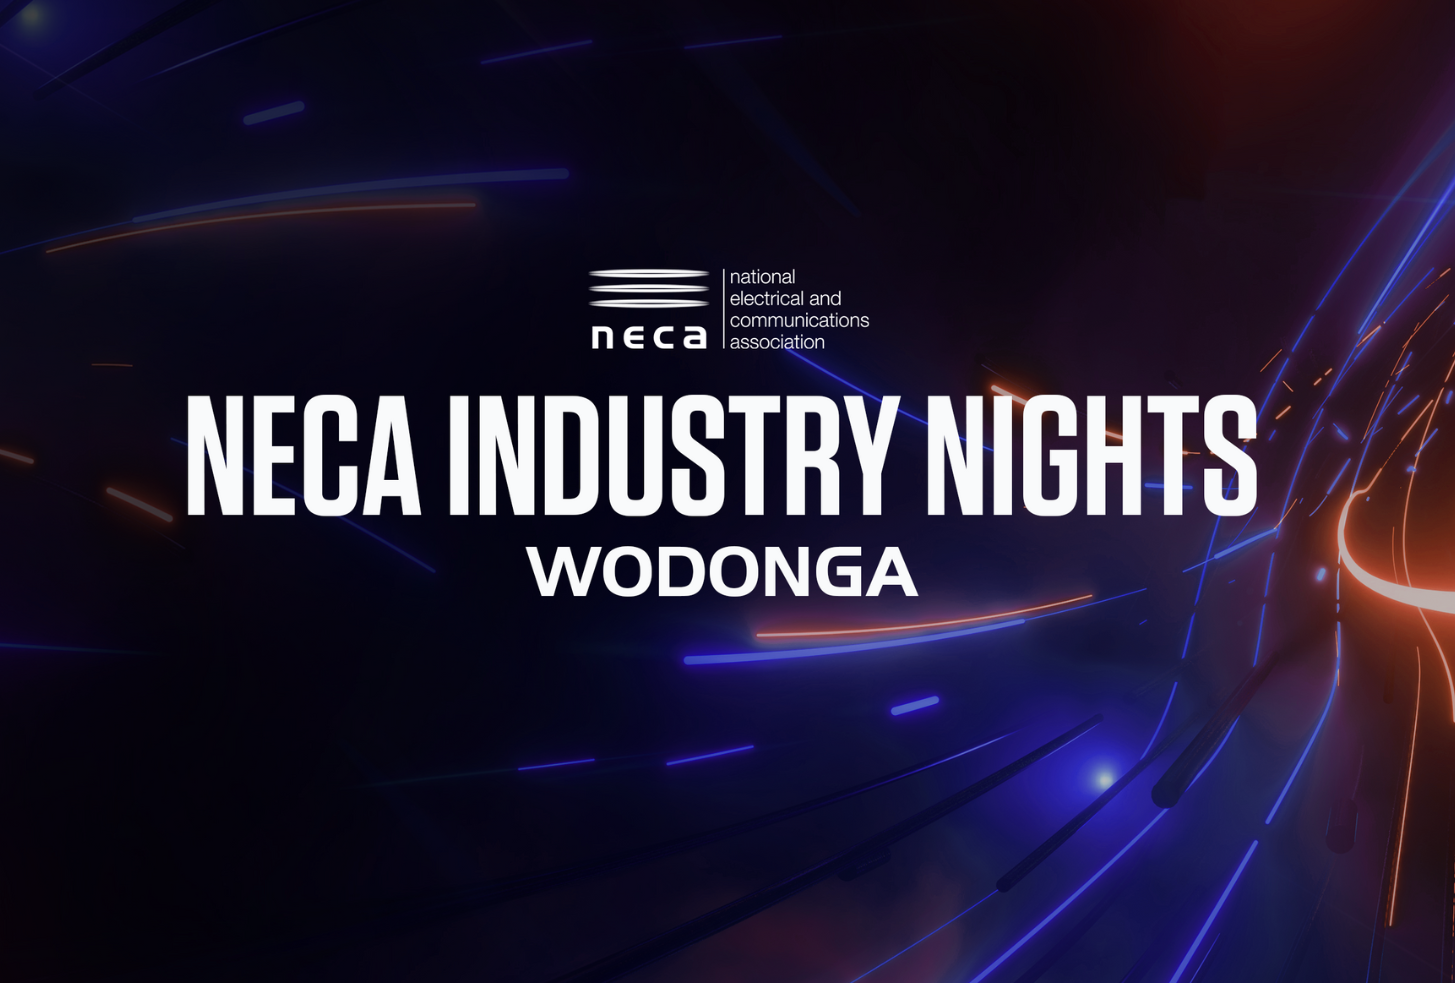 NECA Industry Nights Wodonga